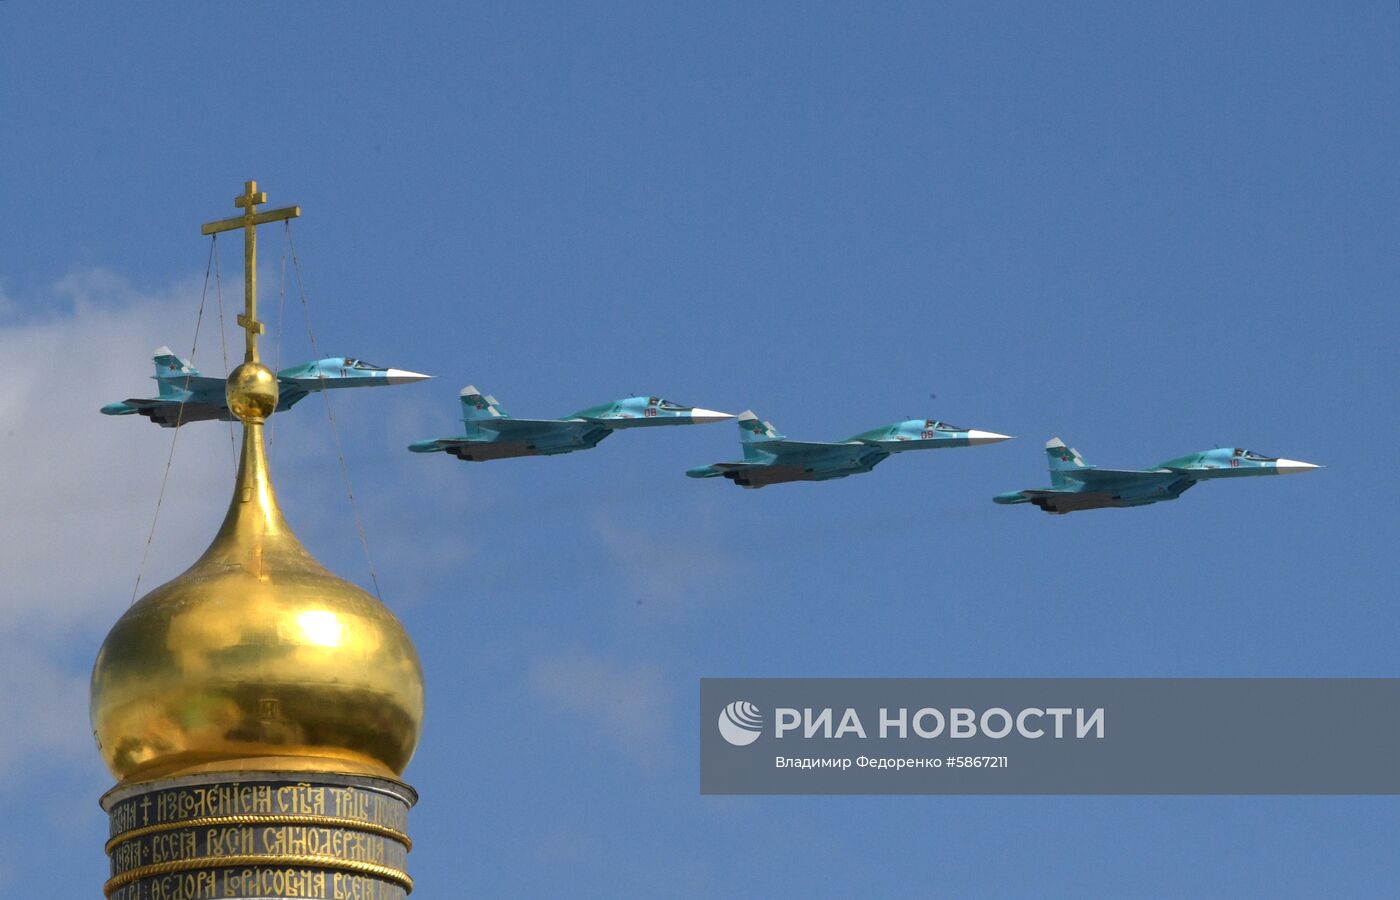 Репетиция воздушной части парада Победы в Москве